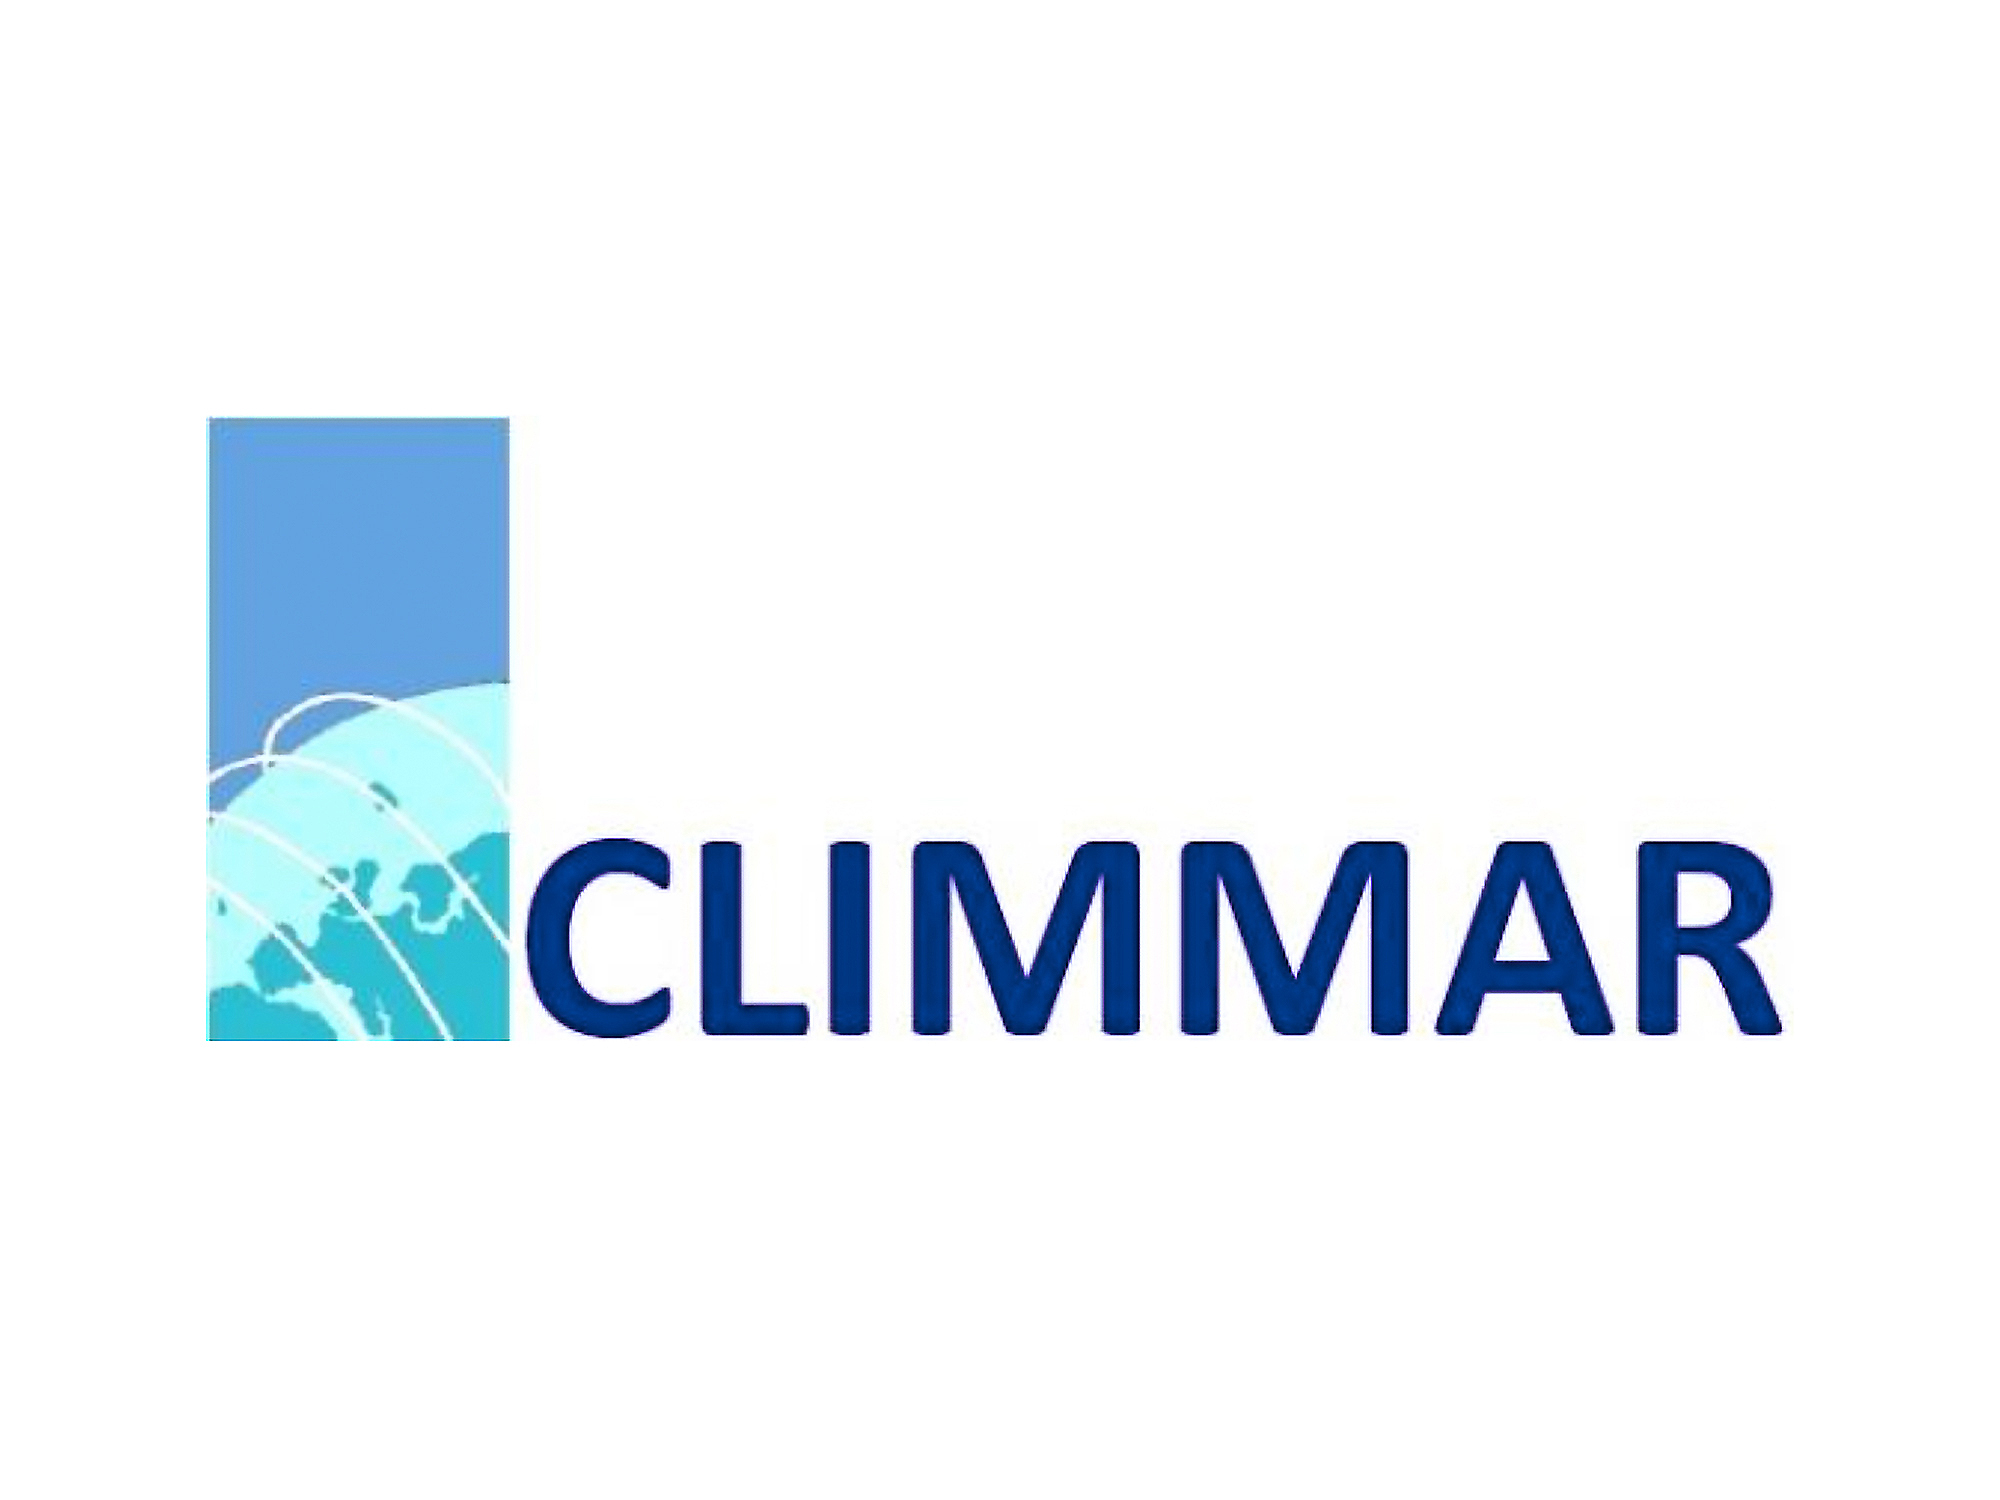 CLIMMAR Logo |copyright: Climmar